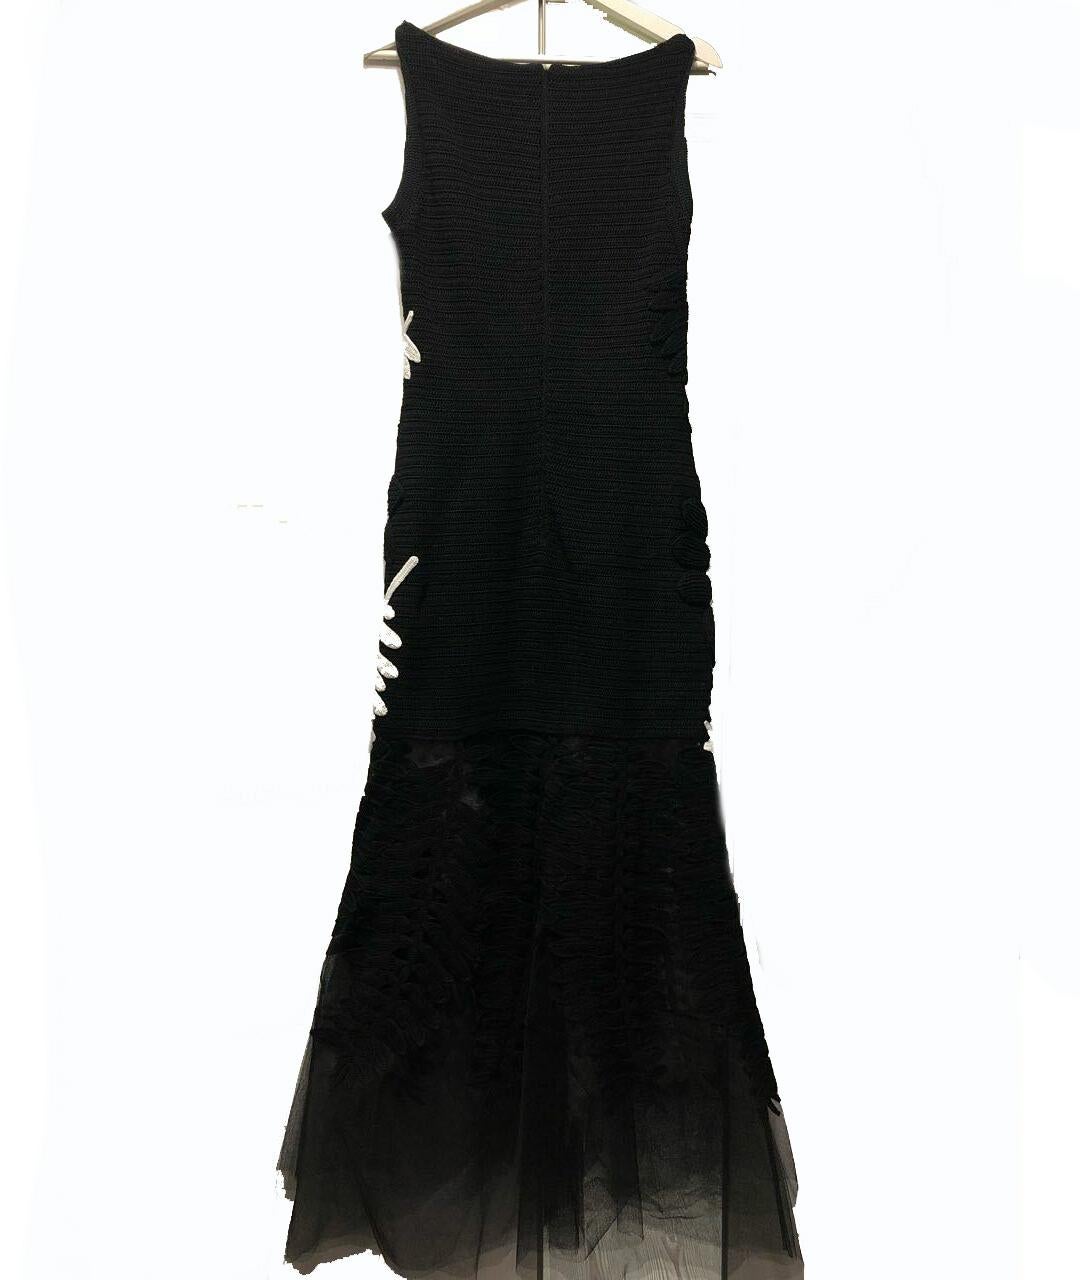 Gray OSCAR DE LA RENTA BLACK and WHITE COTTON LACE Long DRESS Size 8